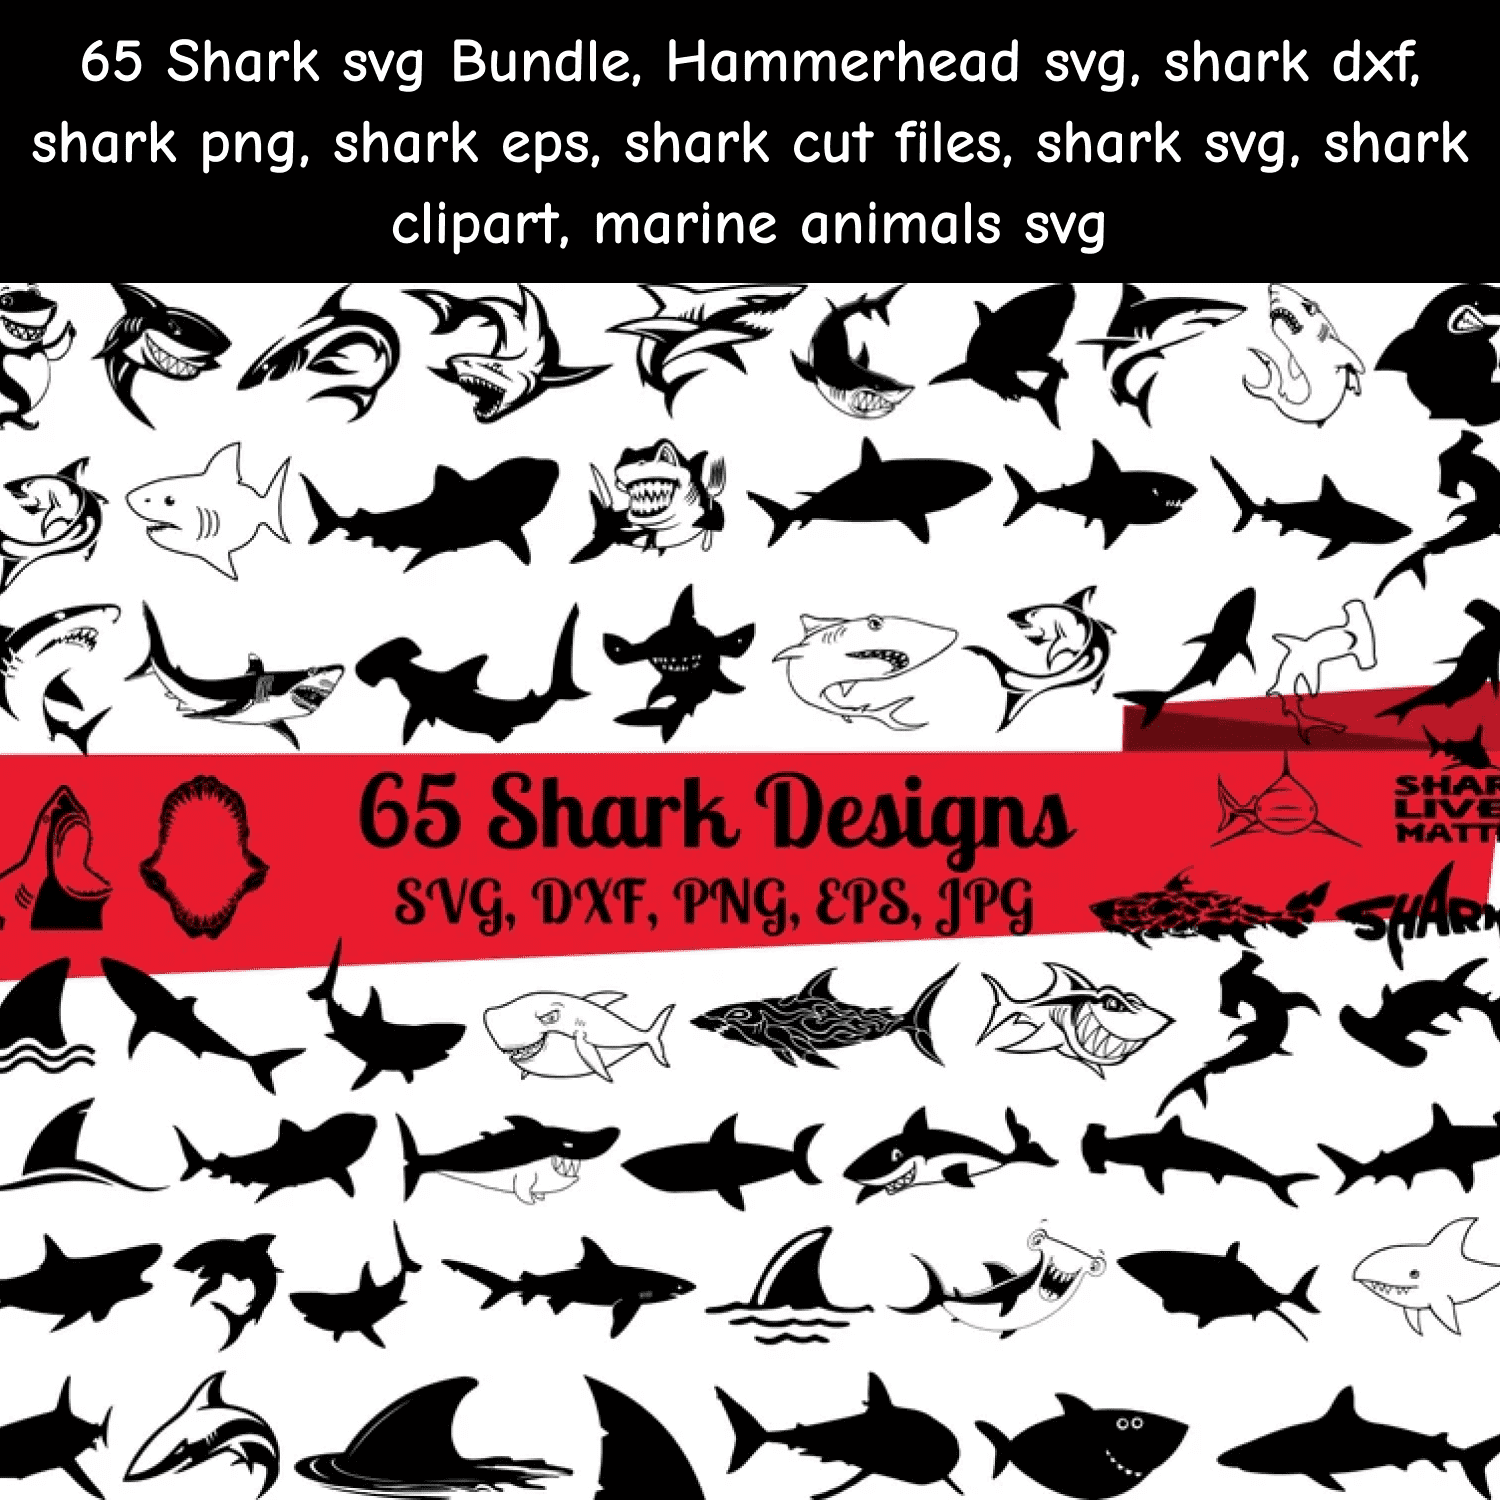 65 Shark SVG Bundle cover.